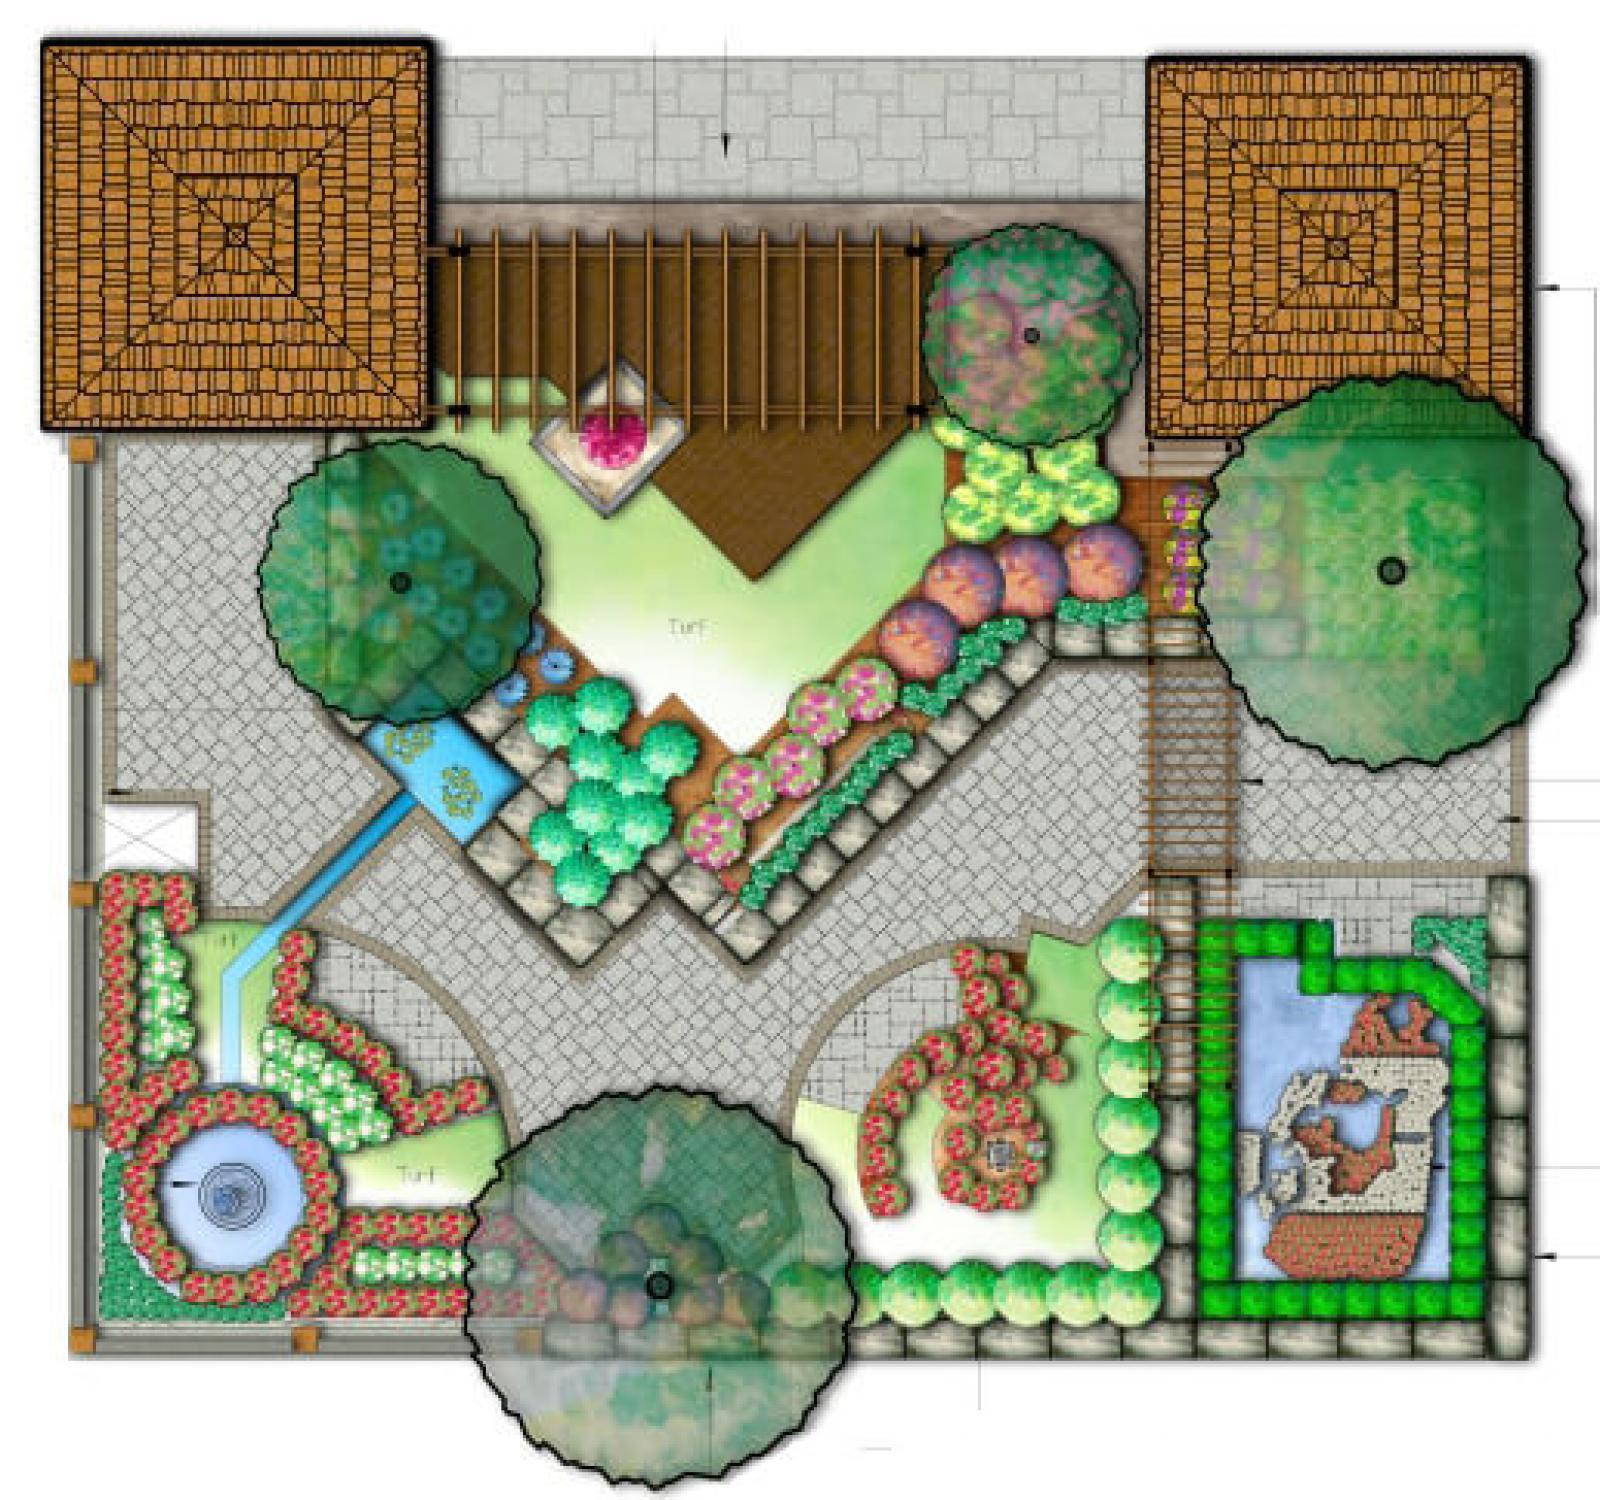 Concept design for 2012 Green for Life garden.